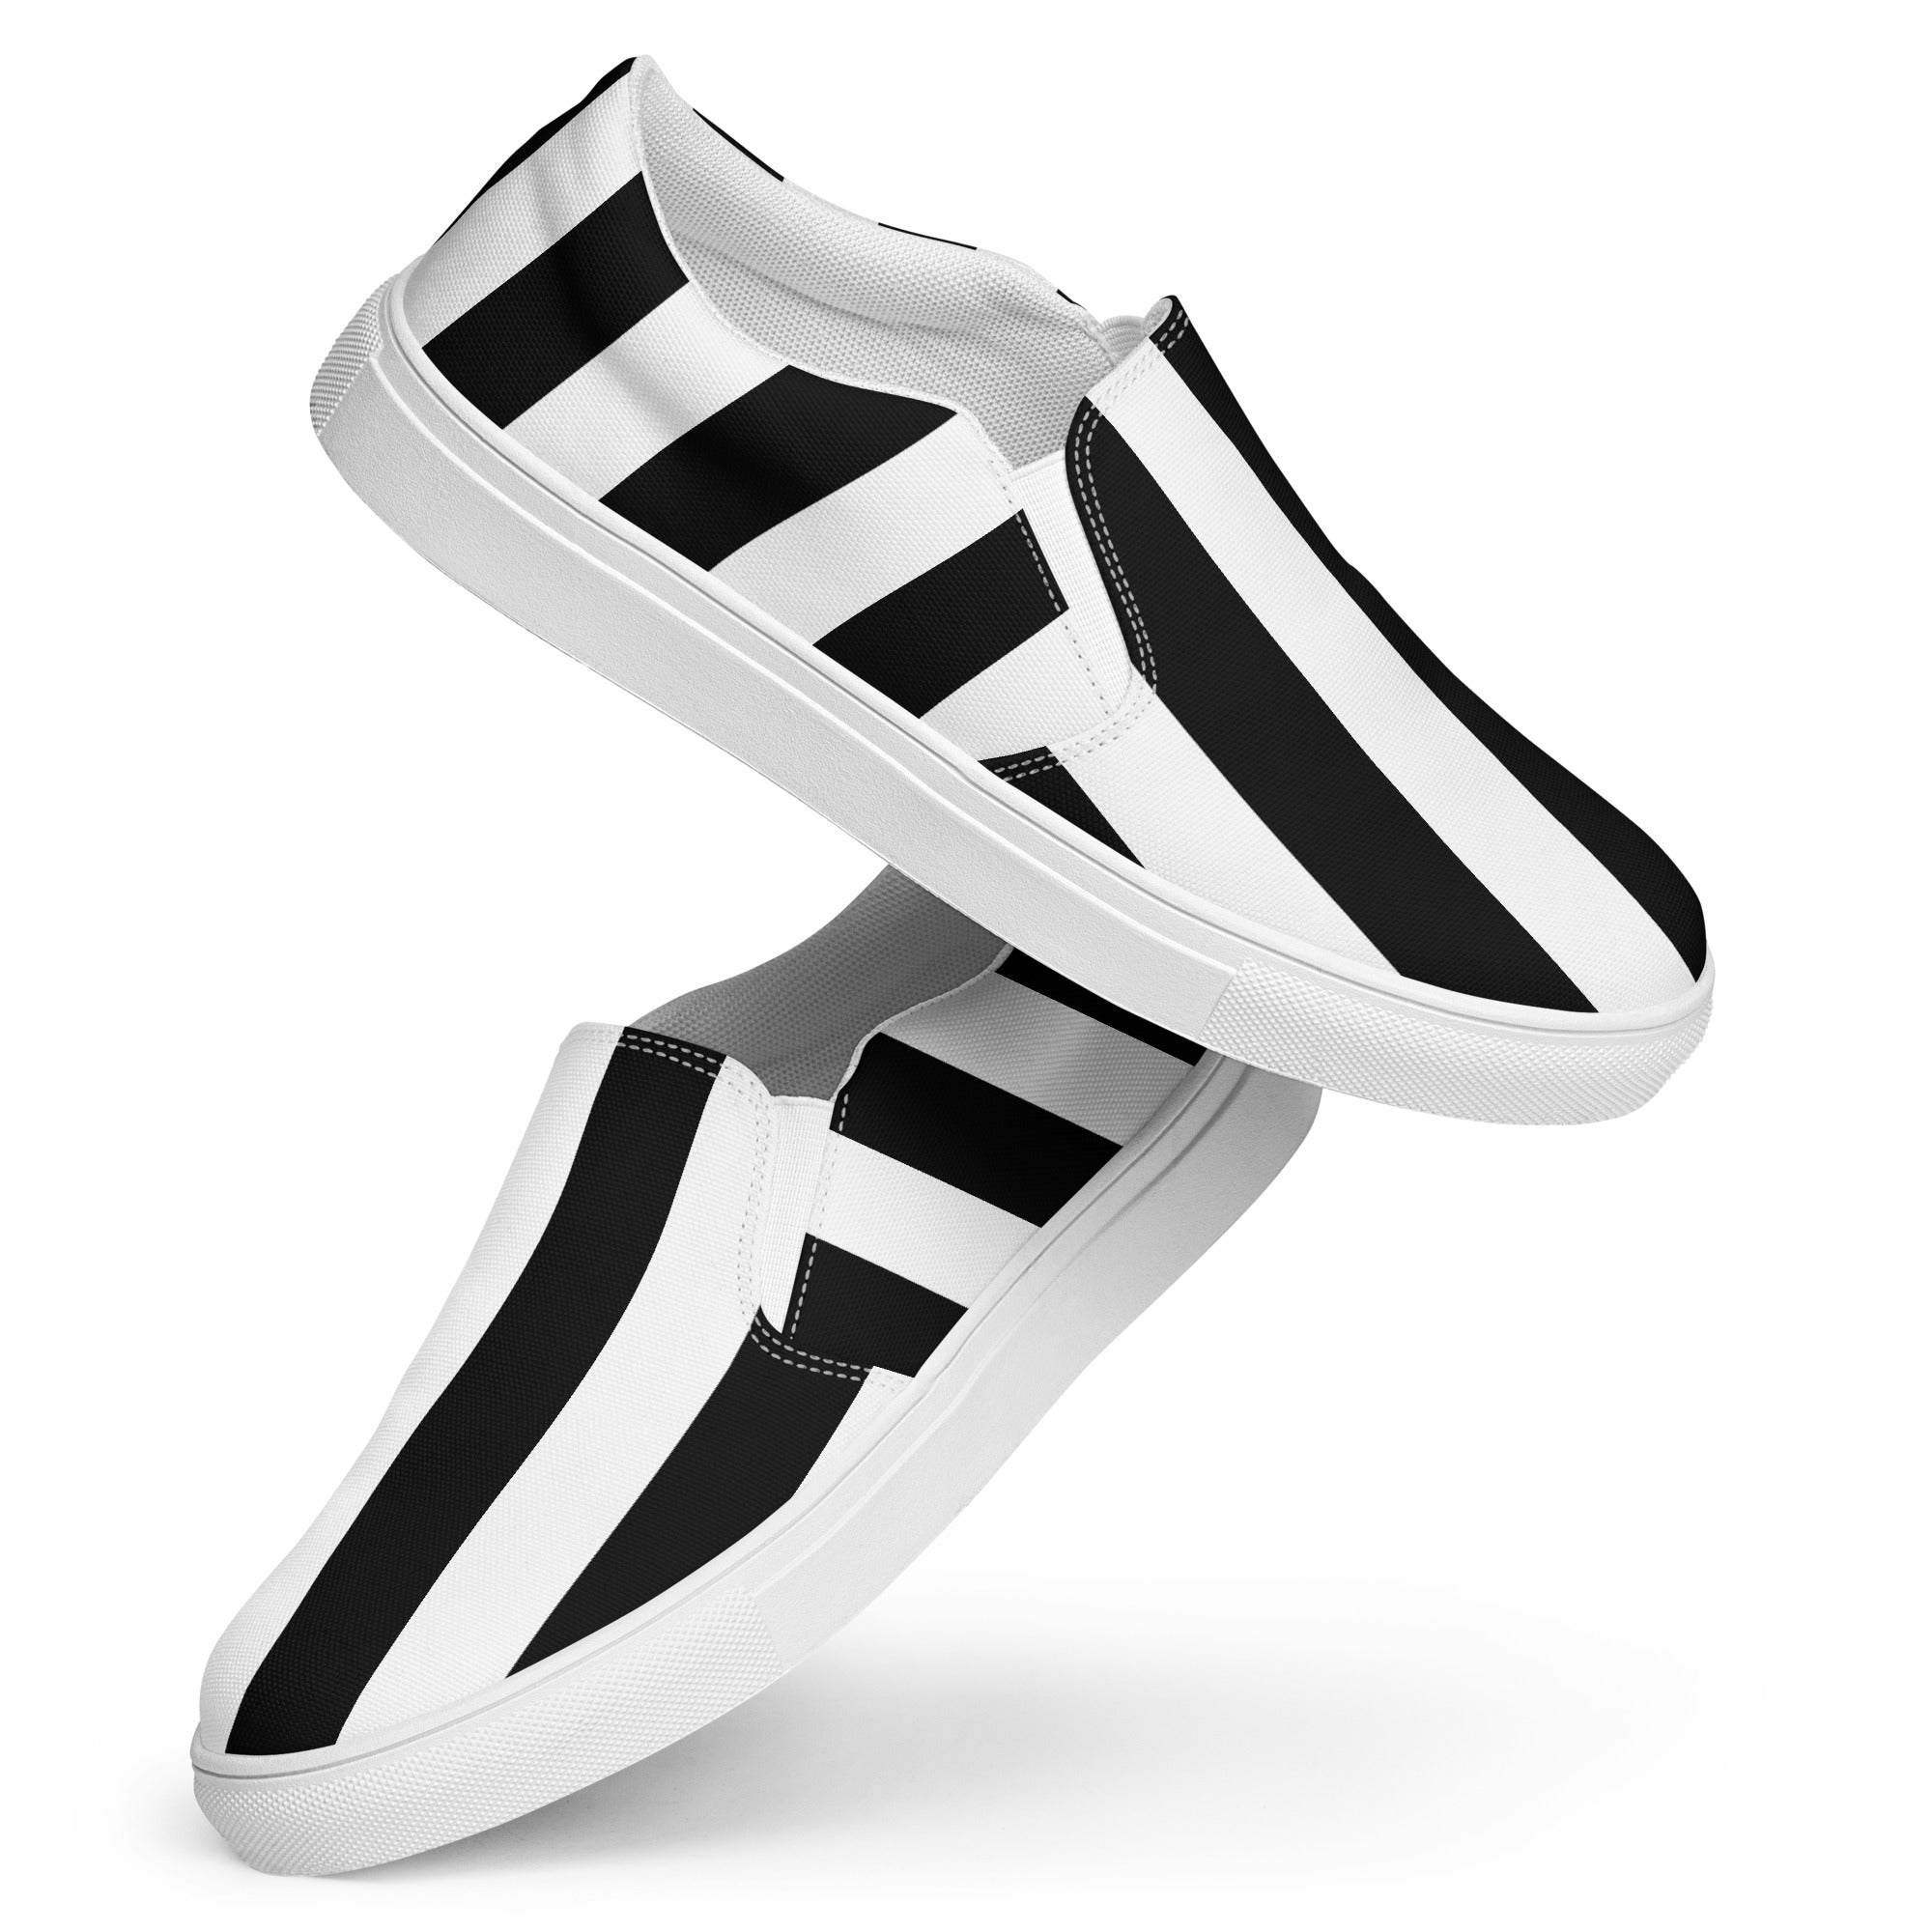 Keds Women's Size 8 Dream Foam Memory Sneakers Tan Striped Canvas Shoes  WF59954 | eBay